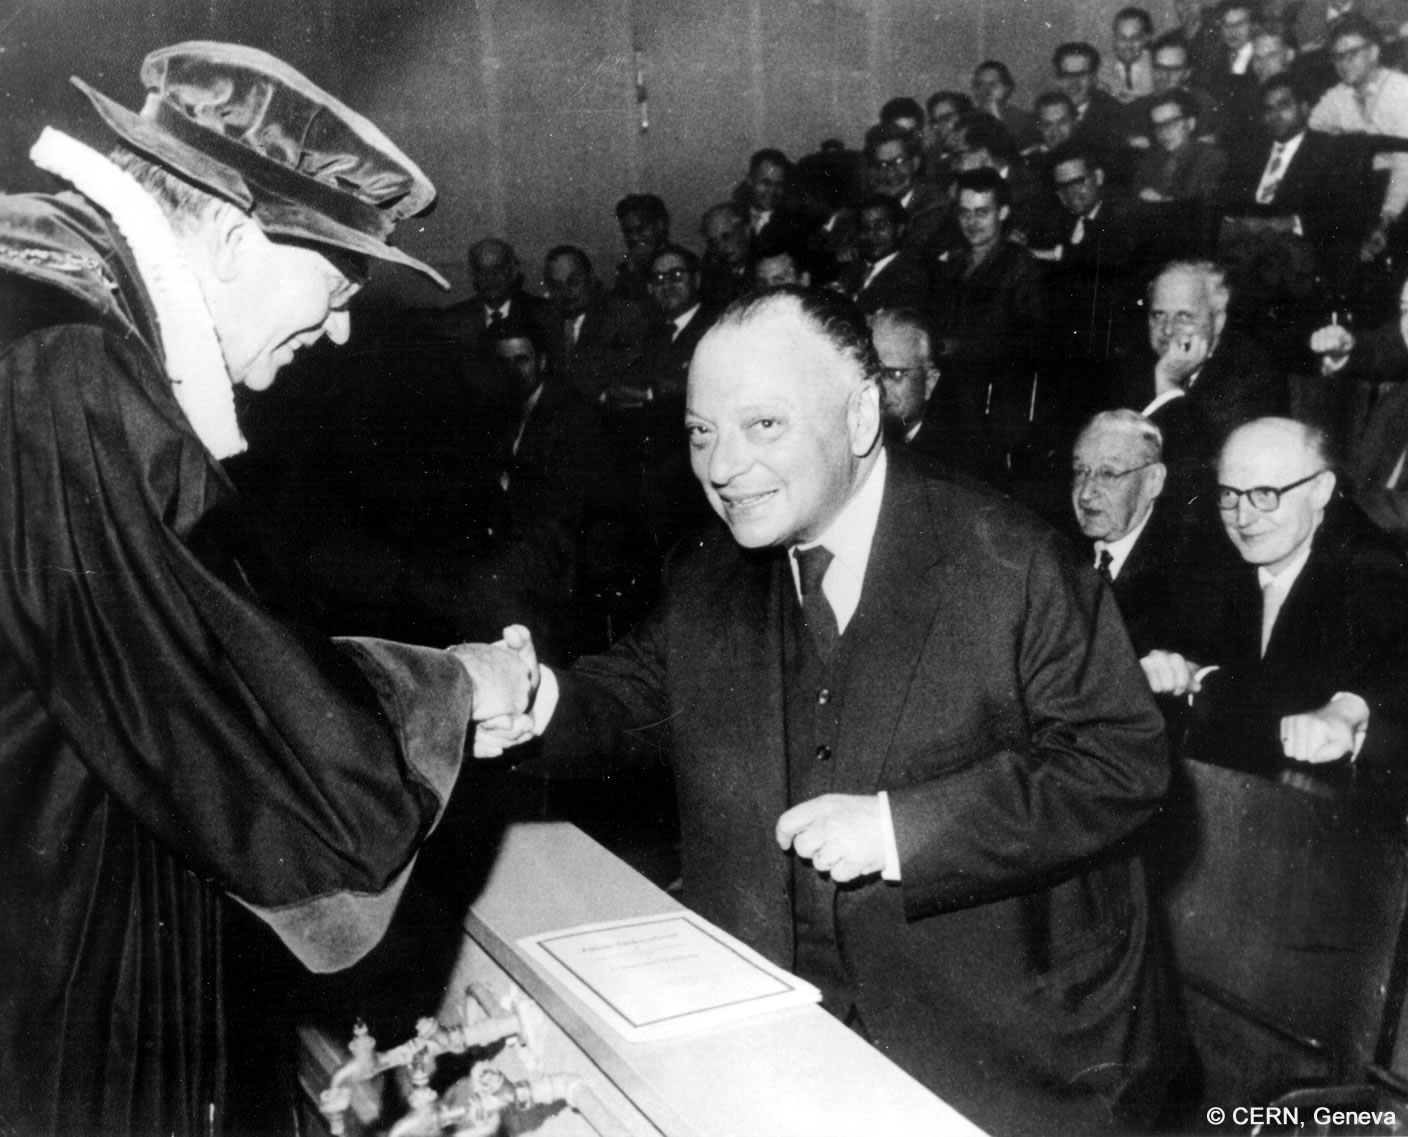 Wolfgang Pauli schüttelt die Hand eines Mannes bei der Verleihung seiner Ehrendoktorwürde. Im Hintergrund sind zahlreiche sitzende Männer zu sehen.